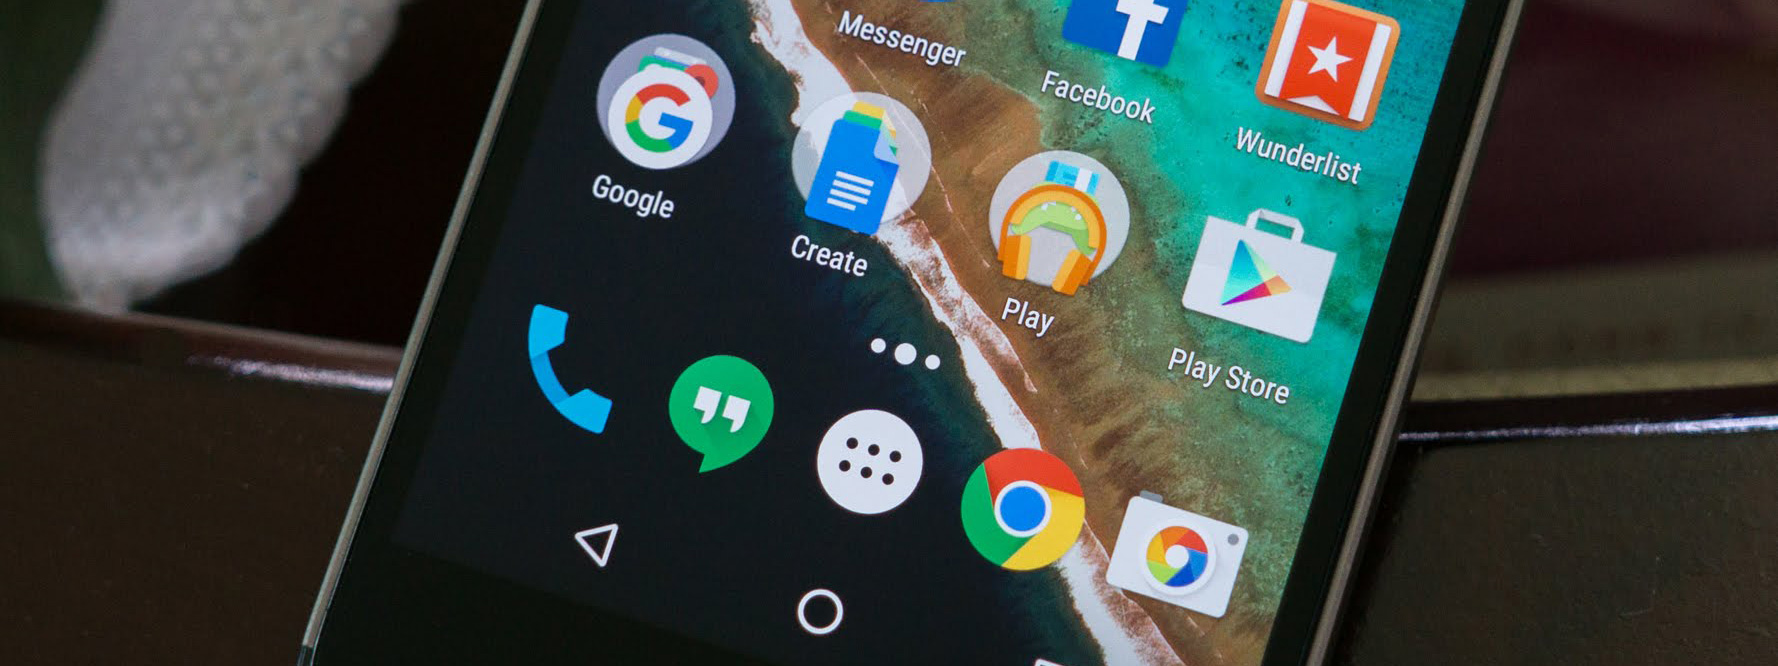 EU yêu cầu Google dừng hỗ trợ tài chính cho các OEM Android để cài sẵn app của mình